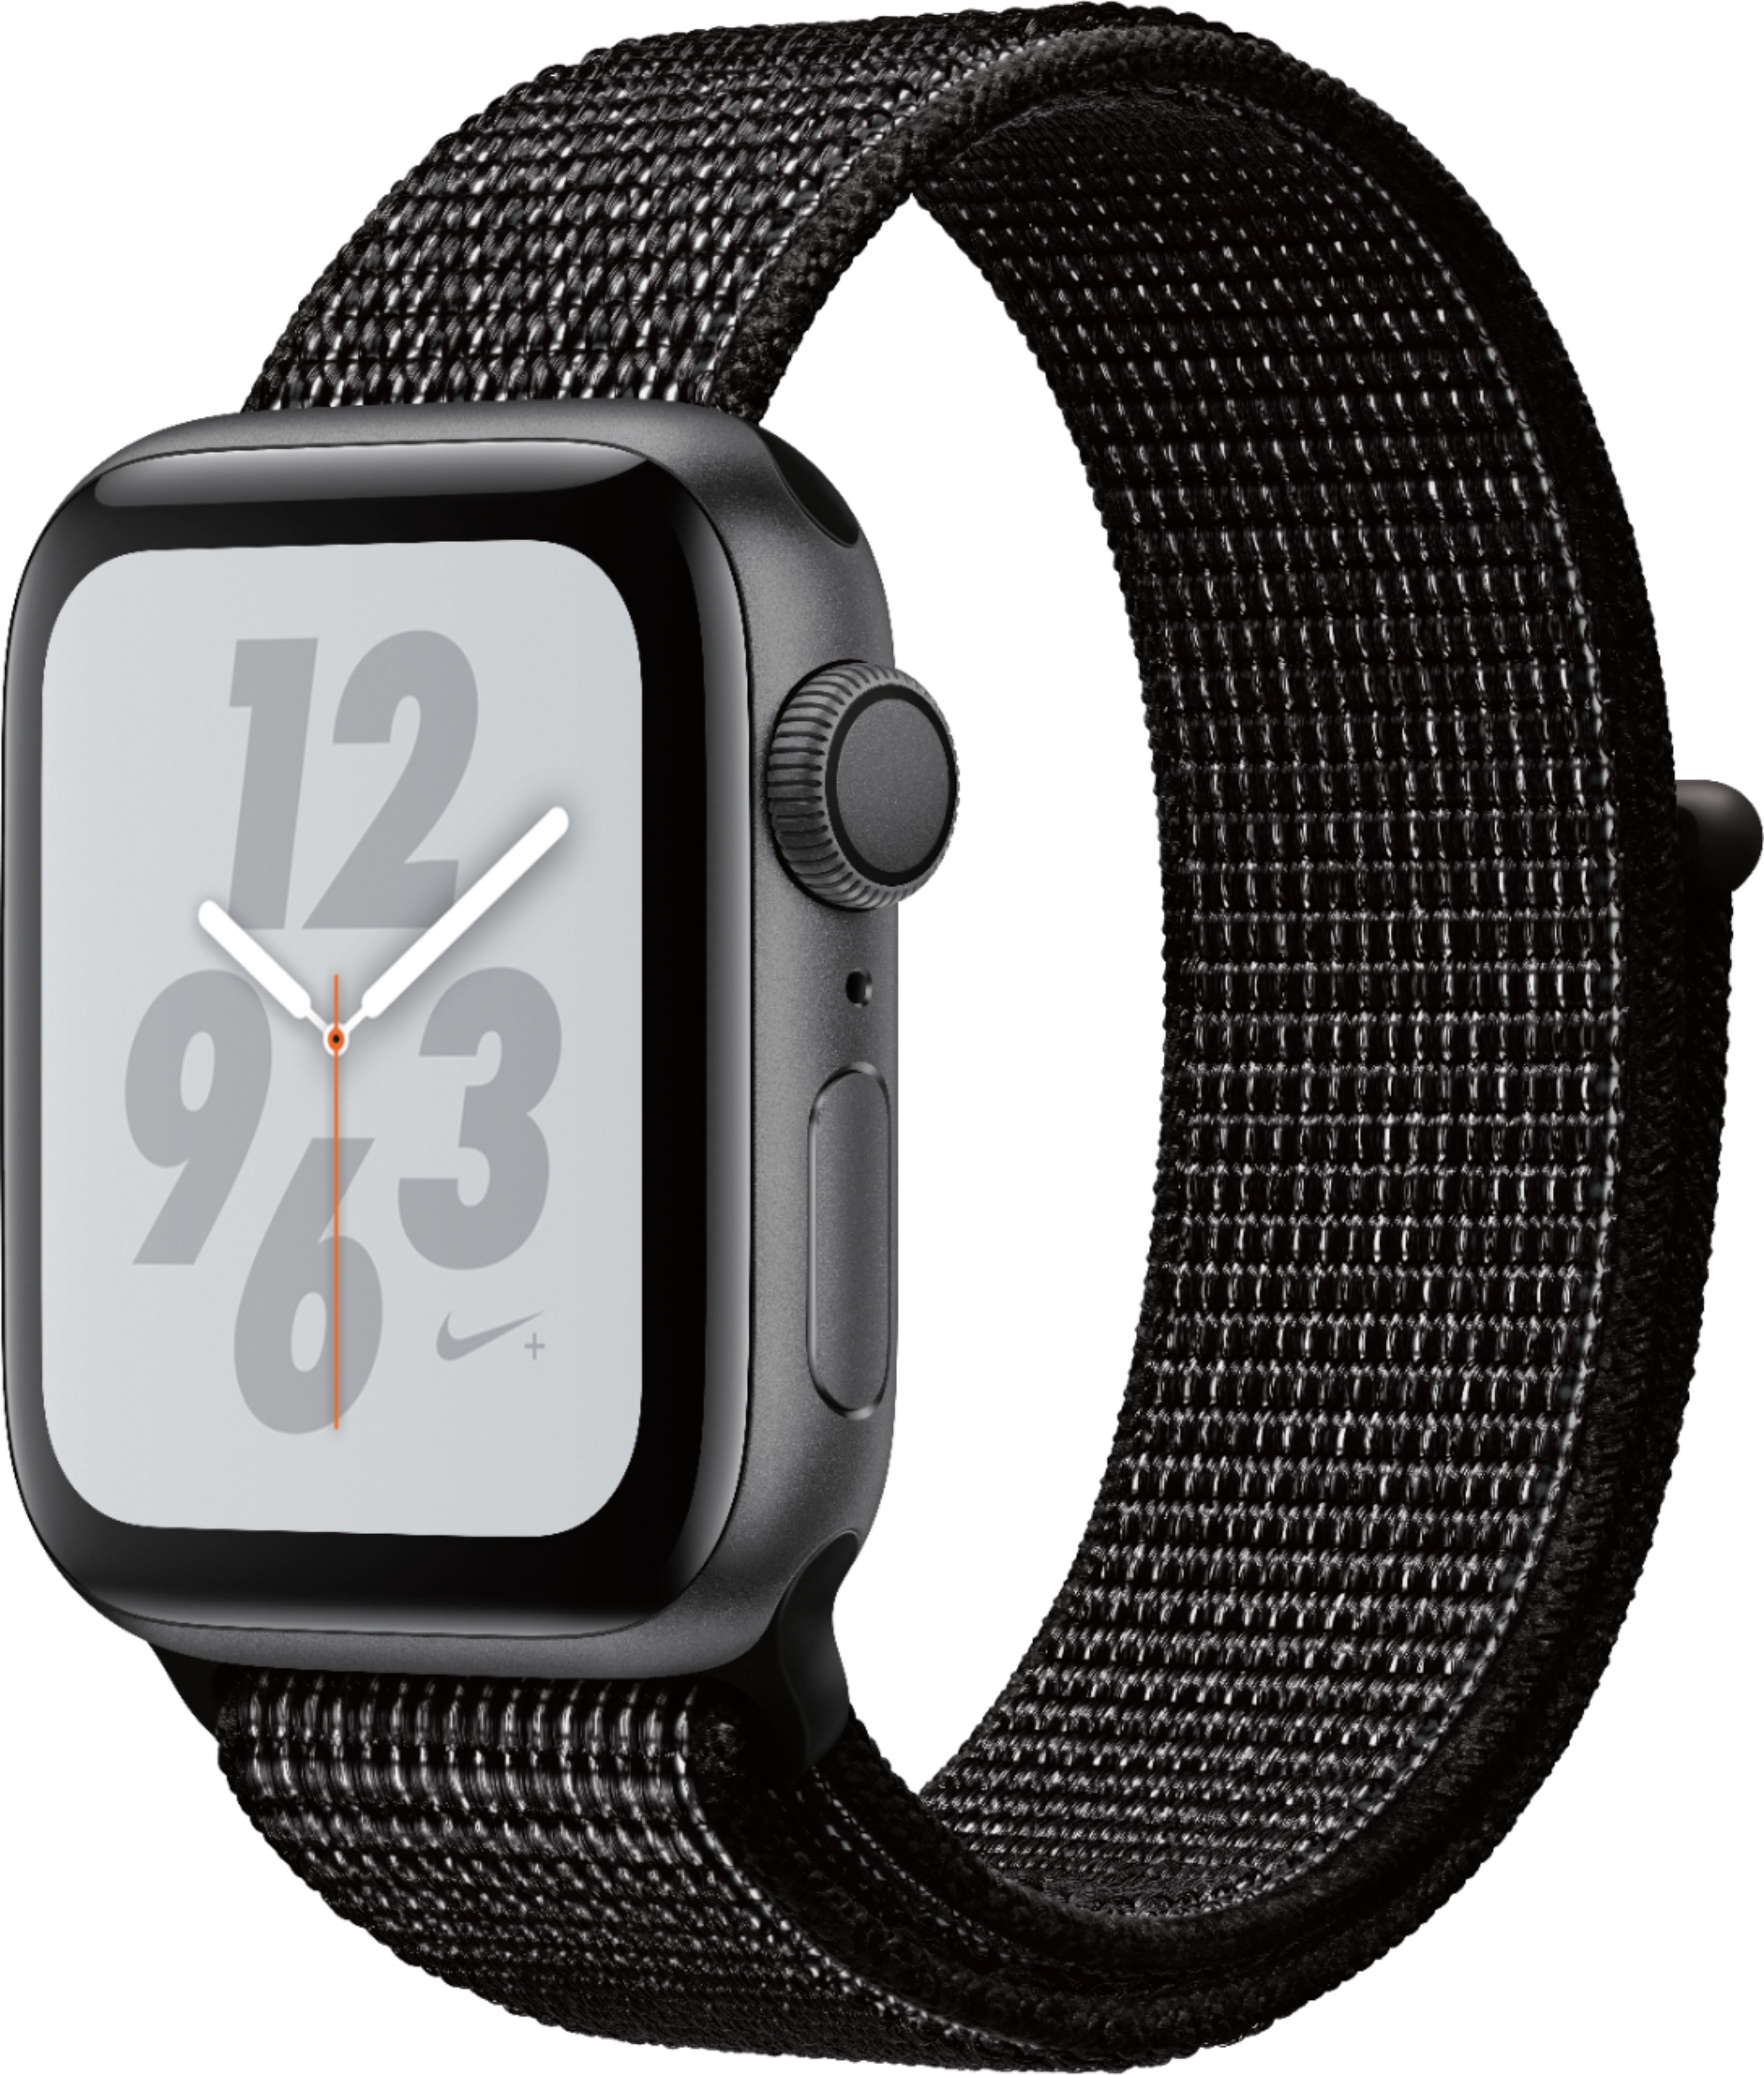 Apple Watch Nike+ Series 4 (GPS) 40mm Space Gray  - Best Buy